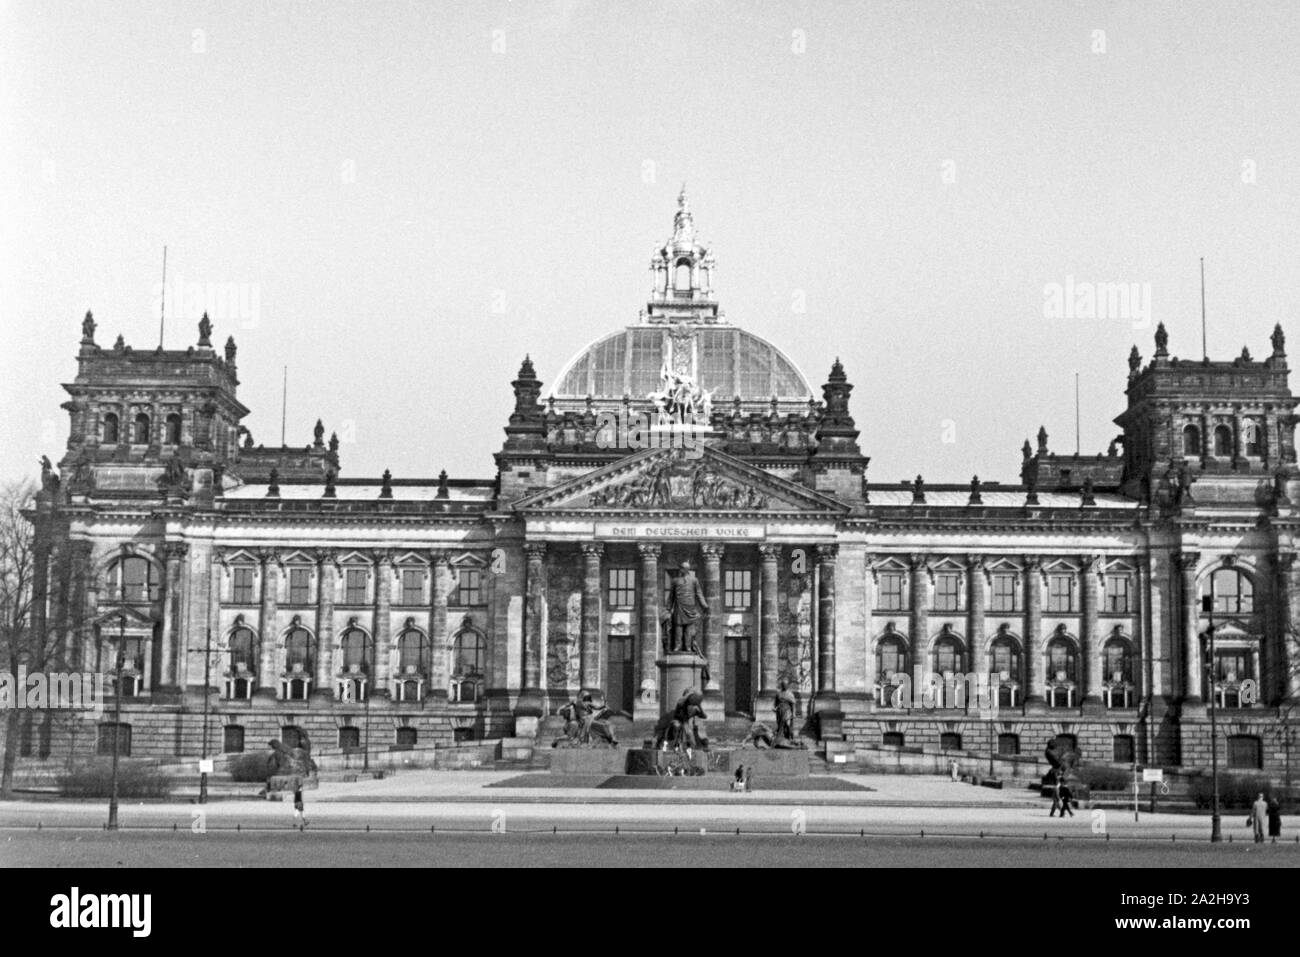 Unterwegs am Reichstag en der Reichshauptstadt Berlin, Deutschland 1930er Jahre. Au capitale de Berlin, Allemagne 1930. Banque D'Images